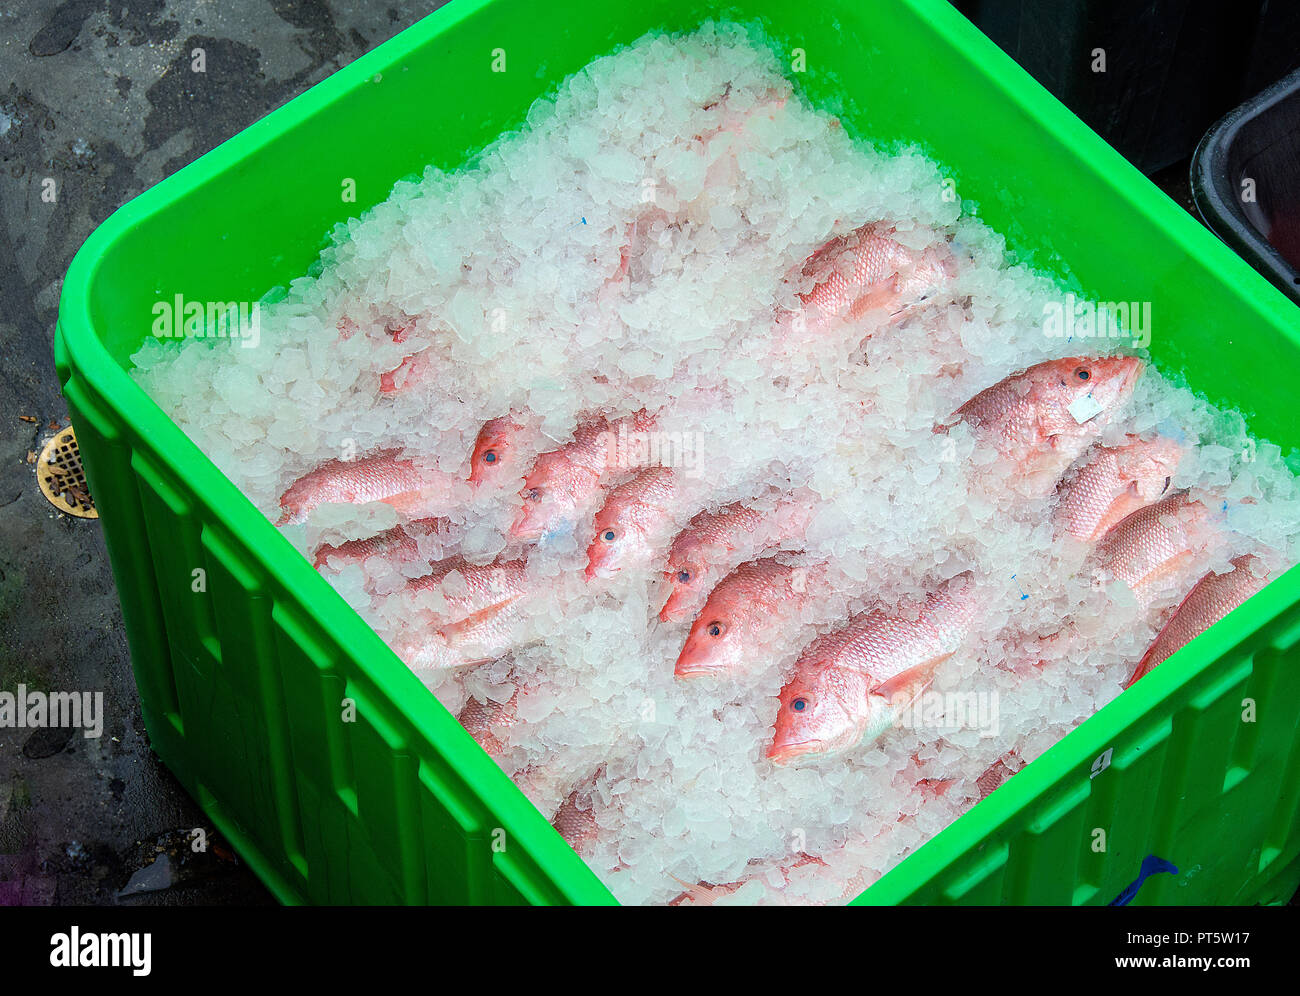 Le vivaneau rouge frais de la Floride le poisson emballé dans la glace dans la boîte en plastique vert clair Banque D'Images